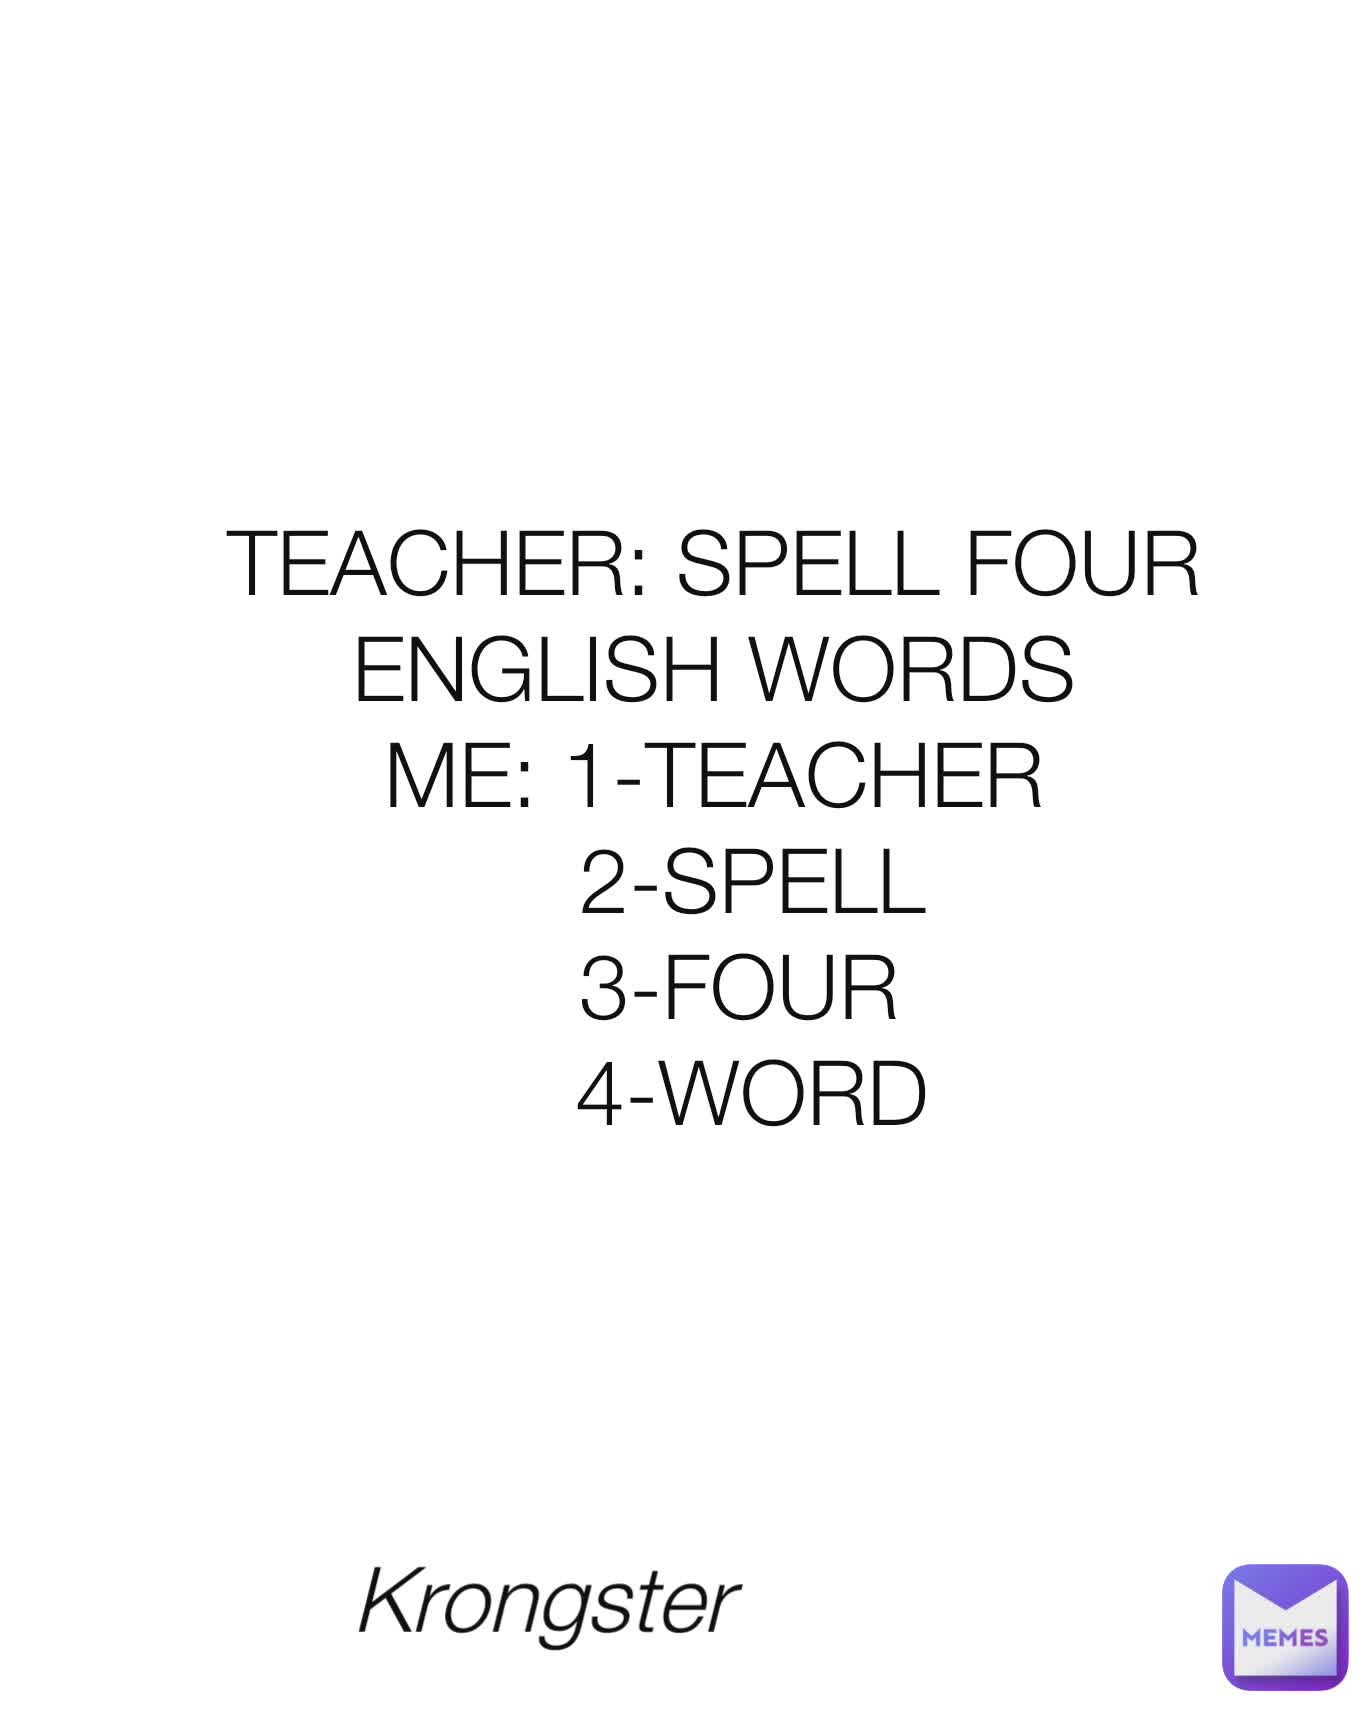 krongster-krongster-teacher-spell-four-english-words-me-1-teacher-2